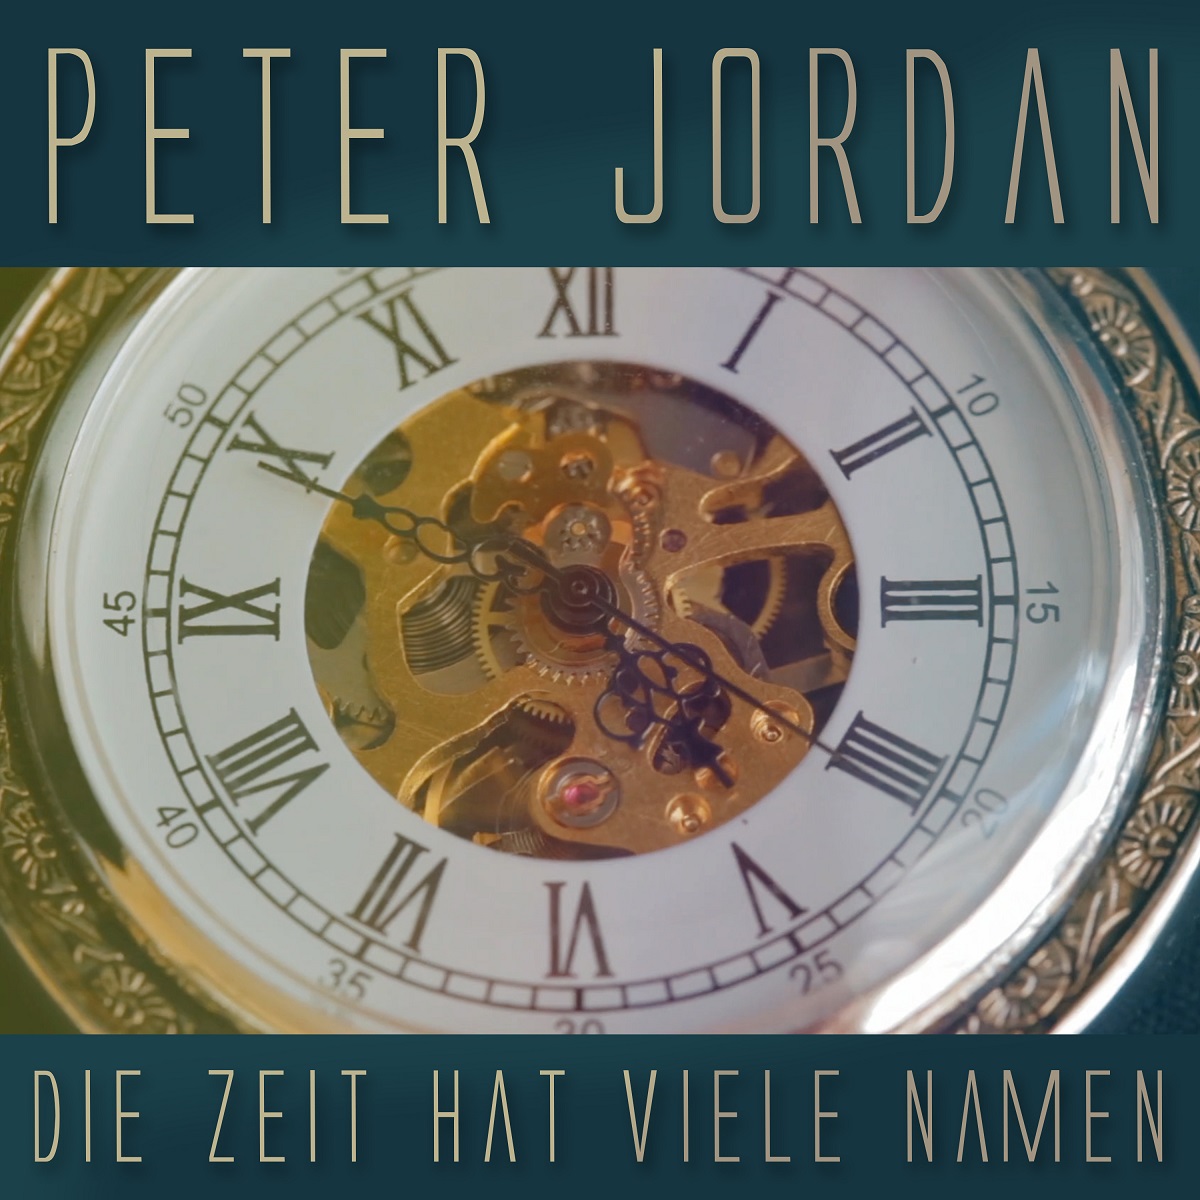 Peter Jordan - Die Zeit hat viele Namen - cover.jpg